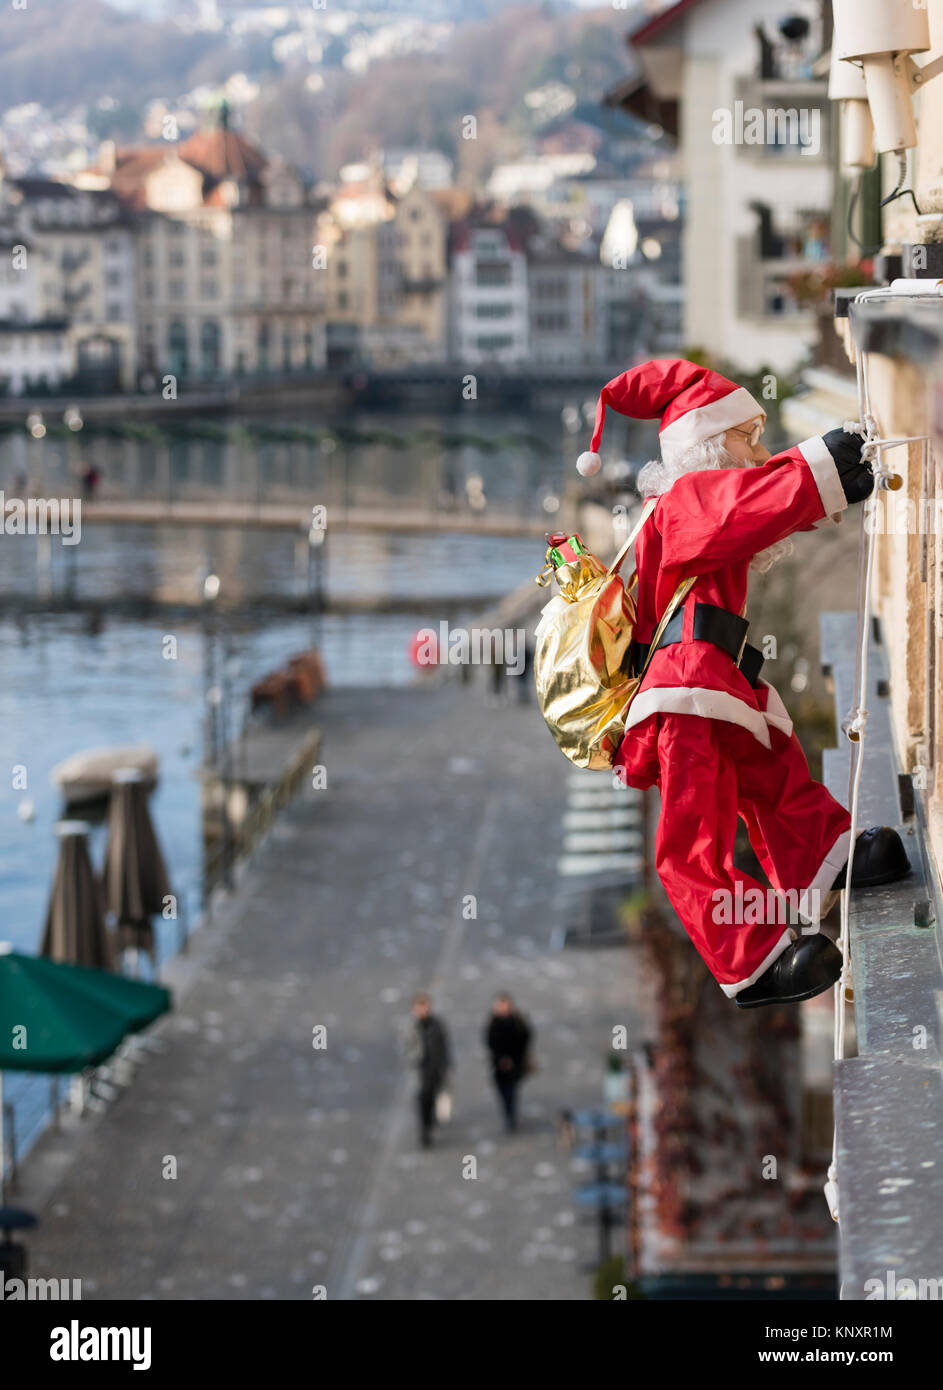 Luzern, Schweiz - 3 Dec 2017: als Weihnachtsschmuck, ein Weihnachtsmann  Marionette mit Weihnachtsgeschenke klettert die Fassade eines Hauses in  Luce Stockfotografie - Alamy